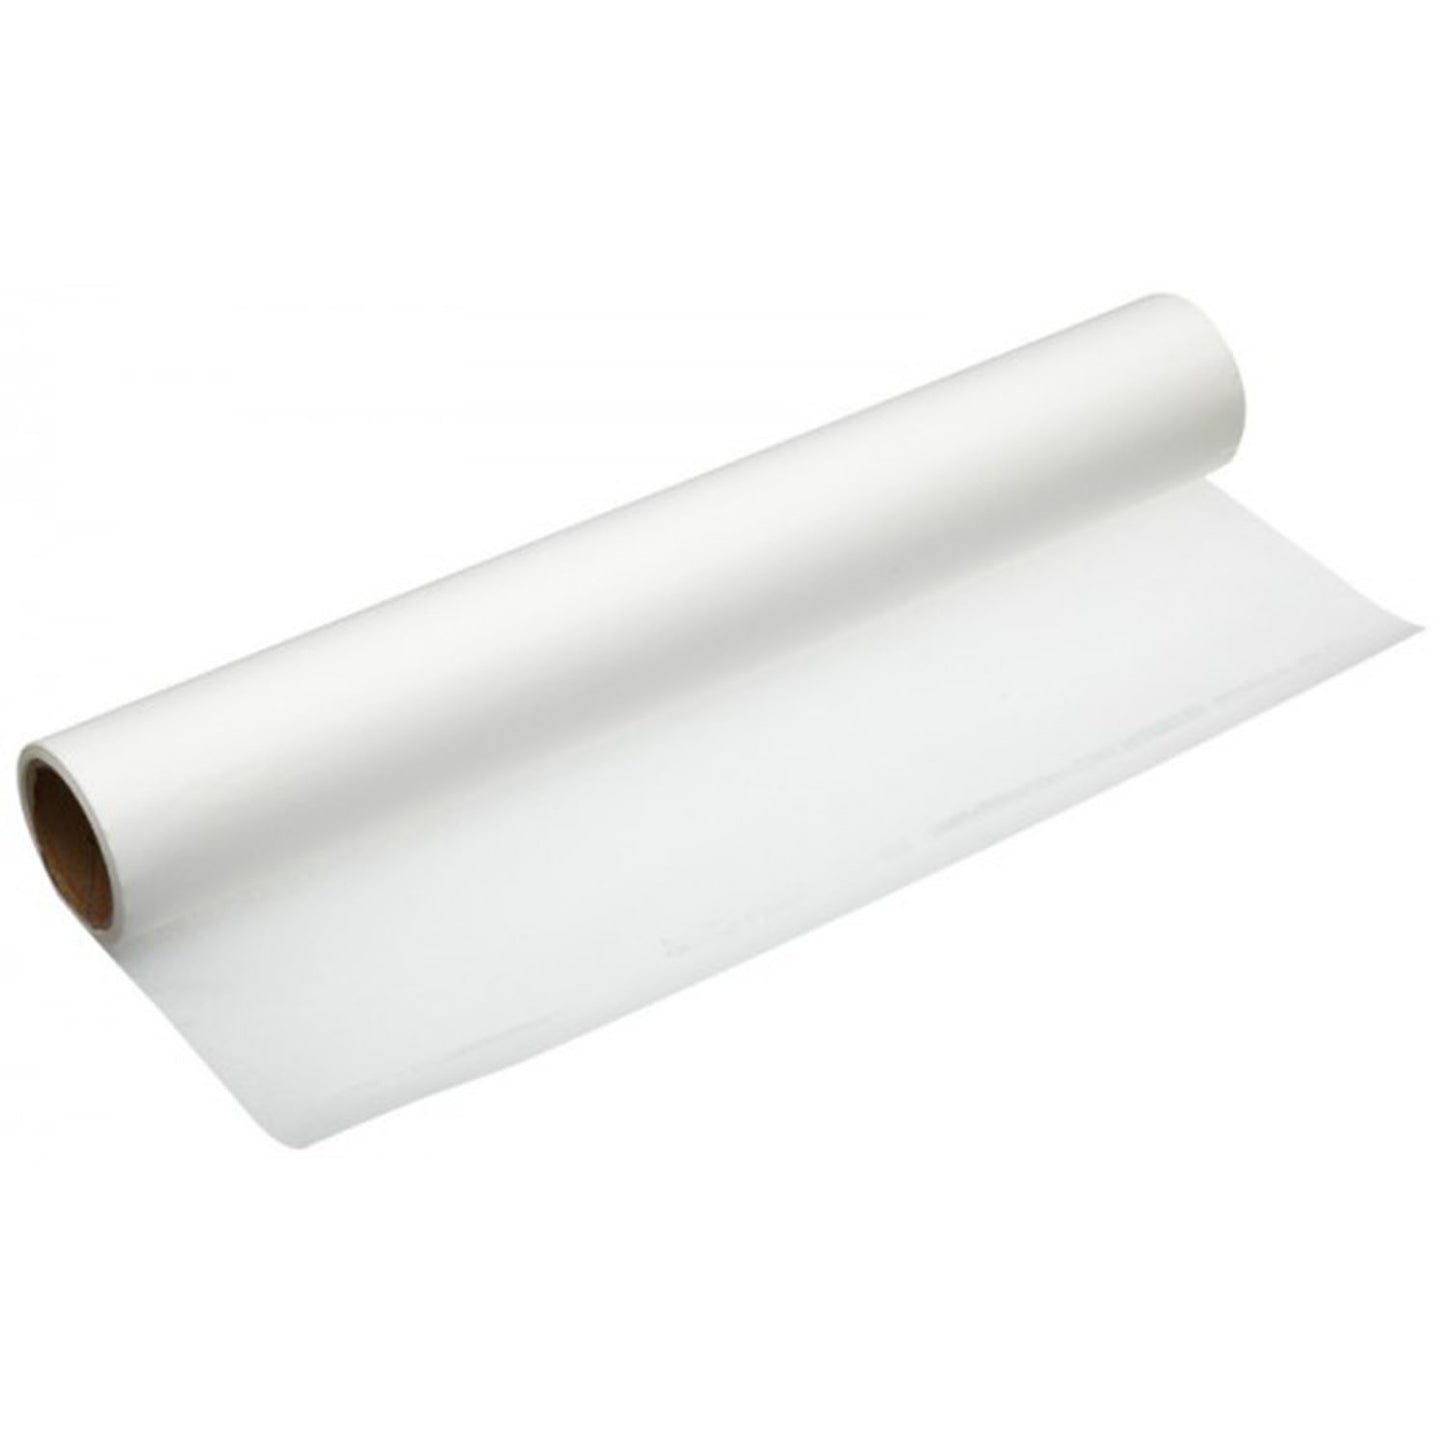 Parchment Paper Premium White 24 - 12"x100" Disposable Nicole Collection   